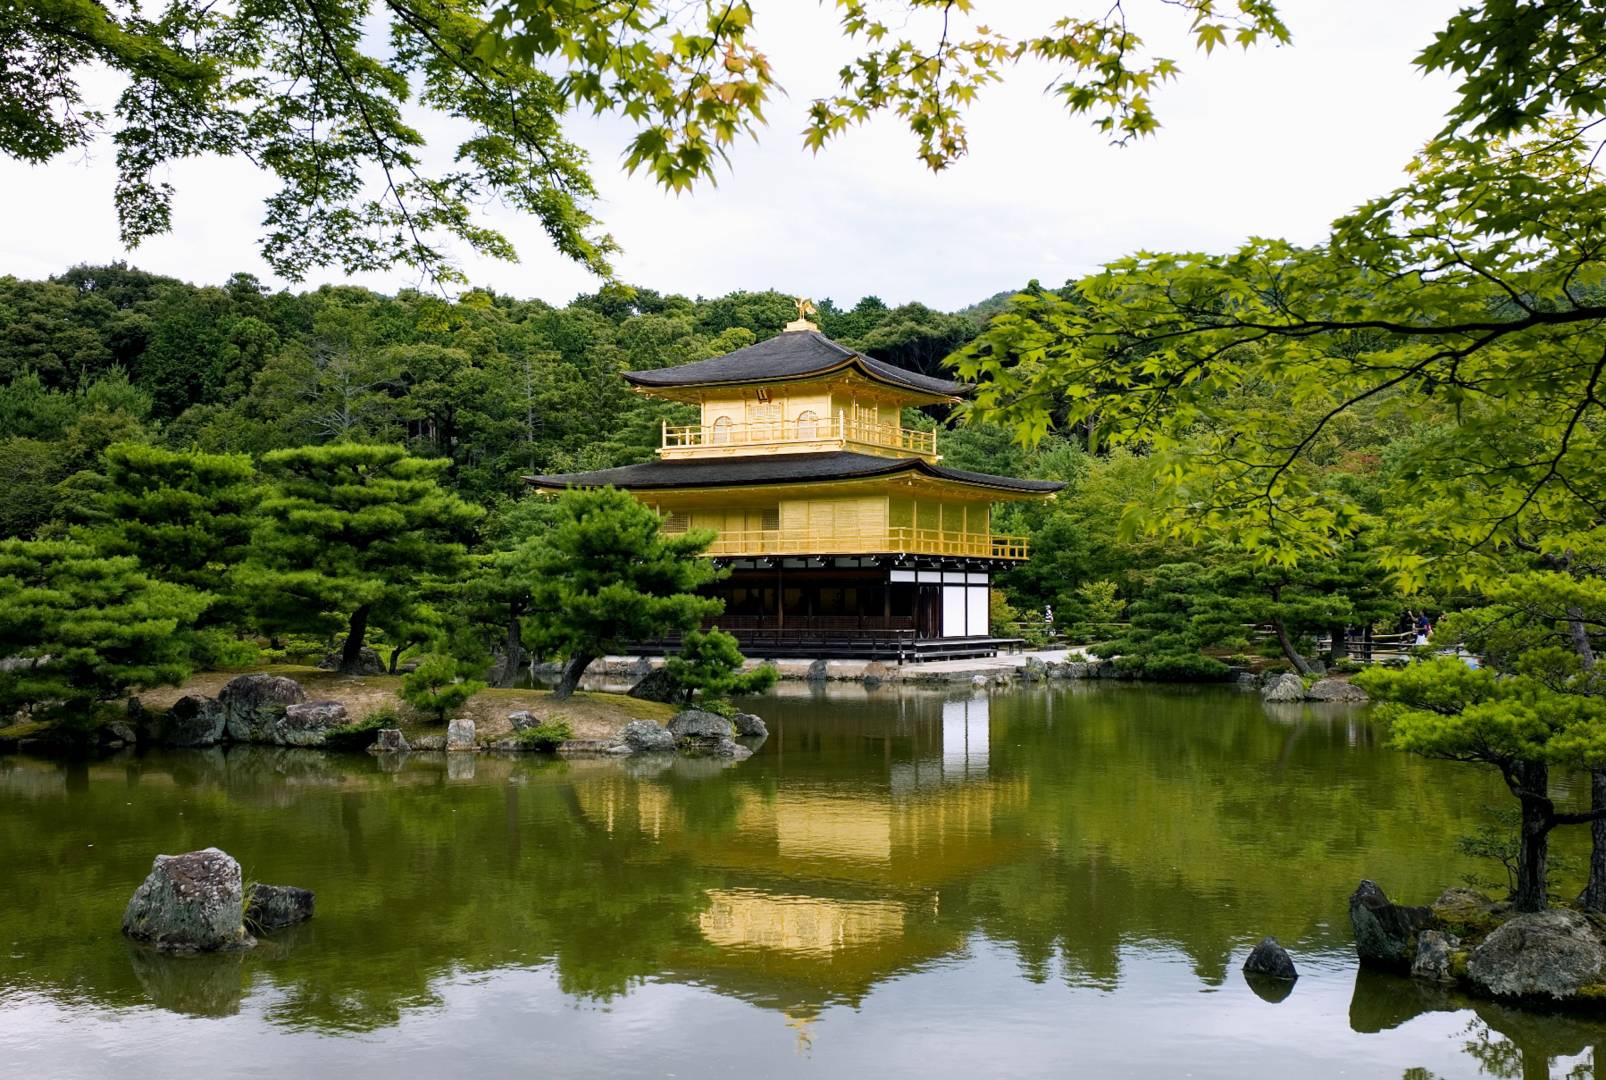 Kinkaku-ji temple, Leica M8 50mm Summicron